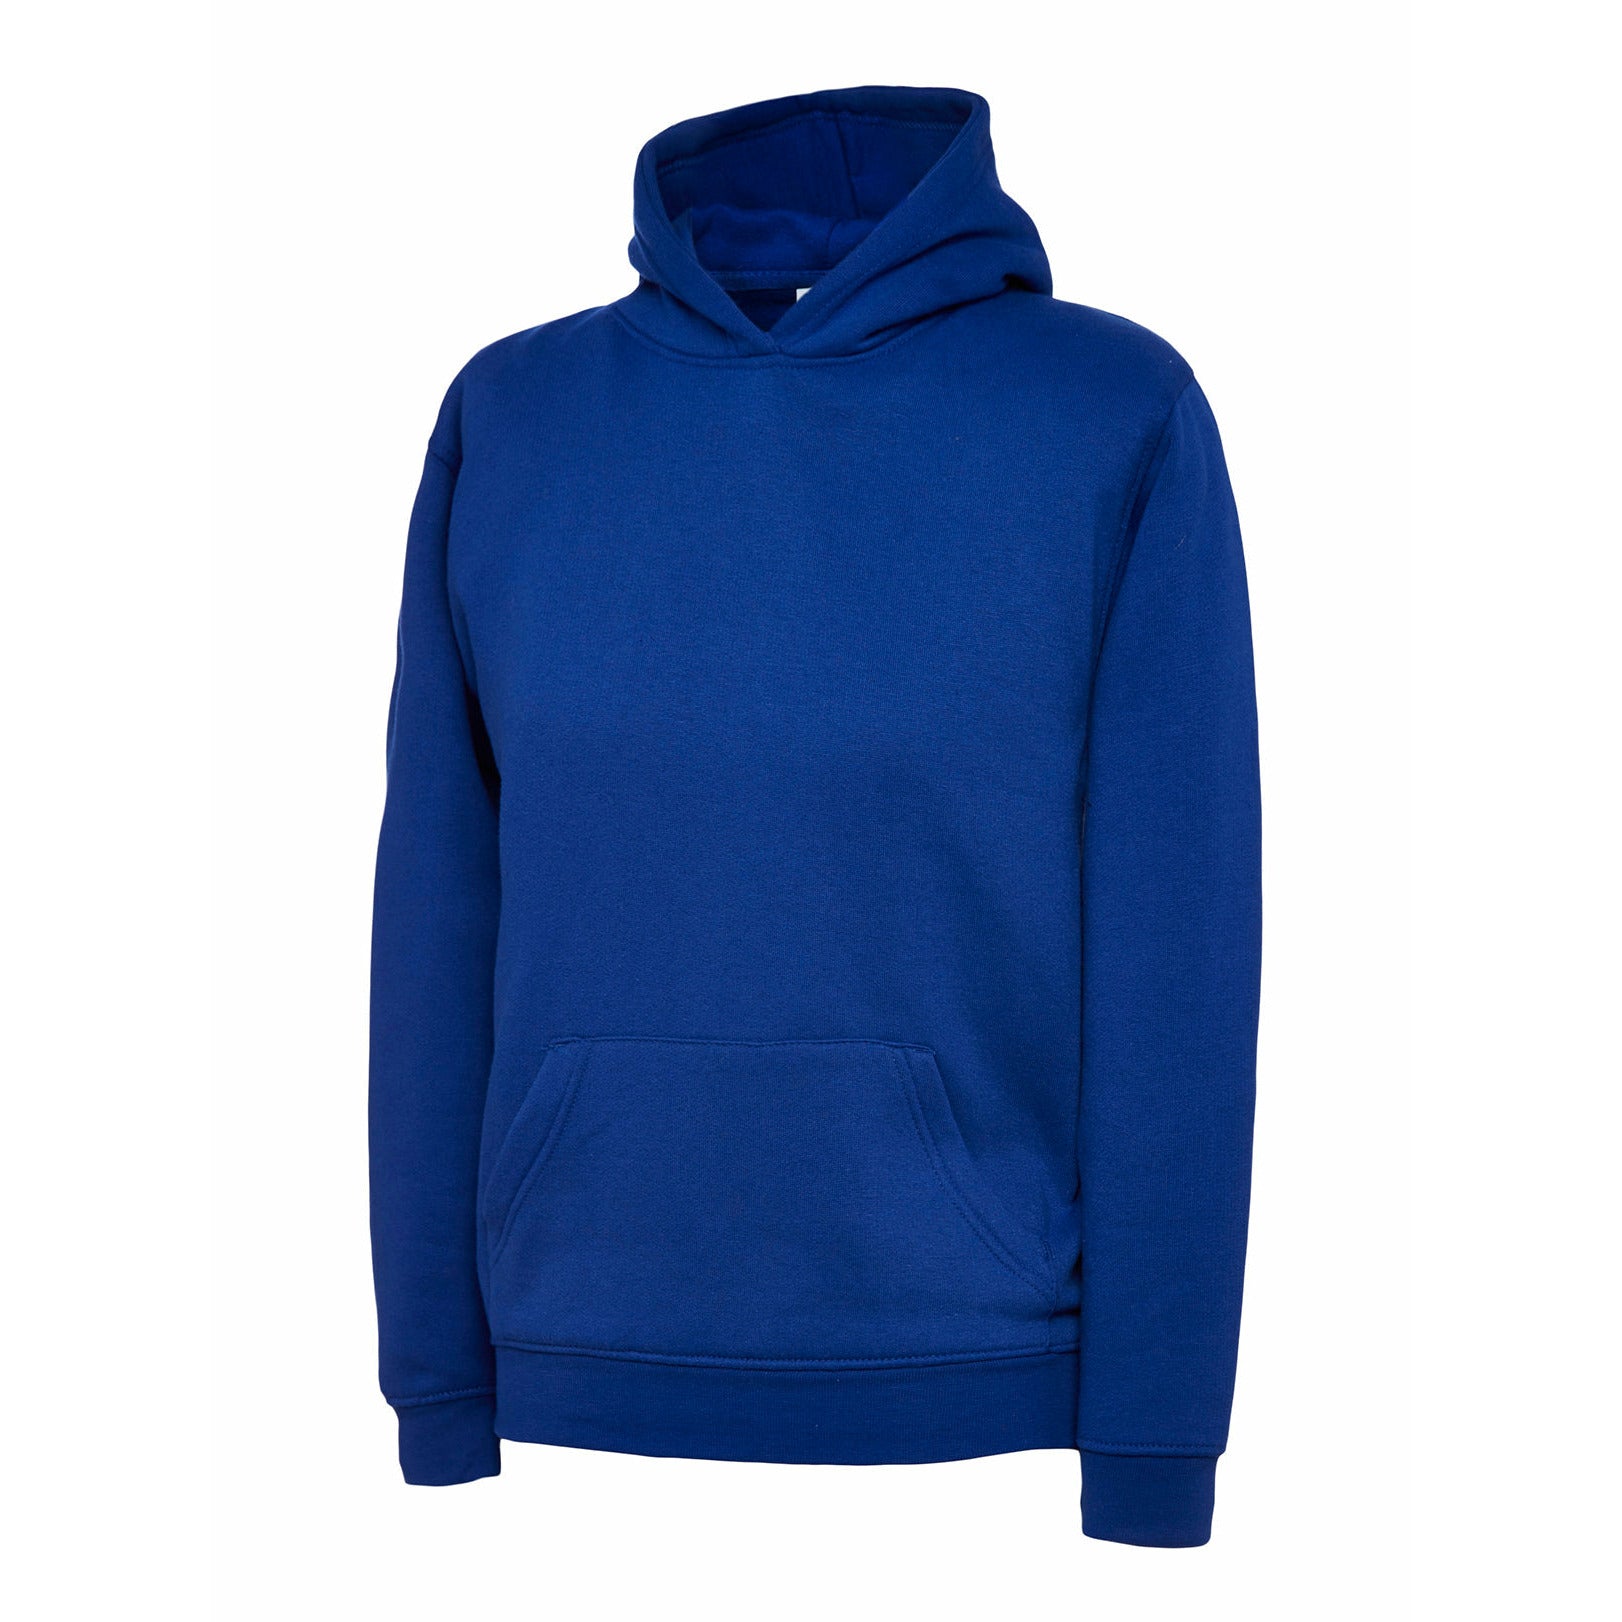 Childrens Hooded Sweatshirt (2 - 4 YRS) Royal Blue